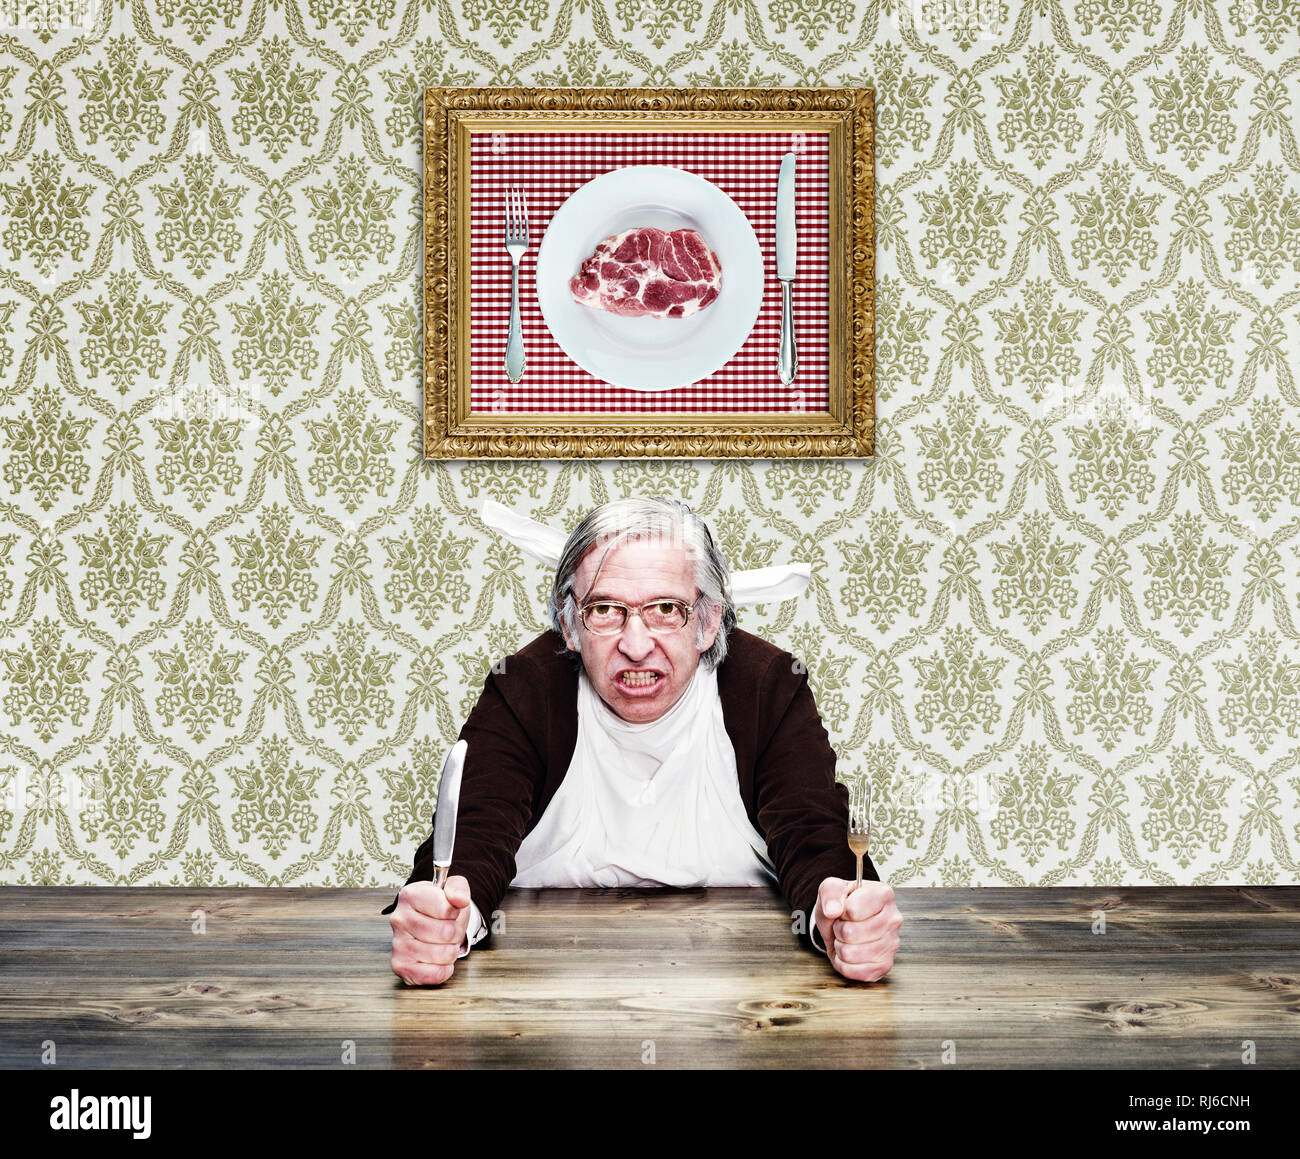 Mann mit grauem Haar und Brille am Tisch, hält Messer und Gabel in den Händen, Foto mit Fleisch an der Wand Stock Photo